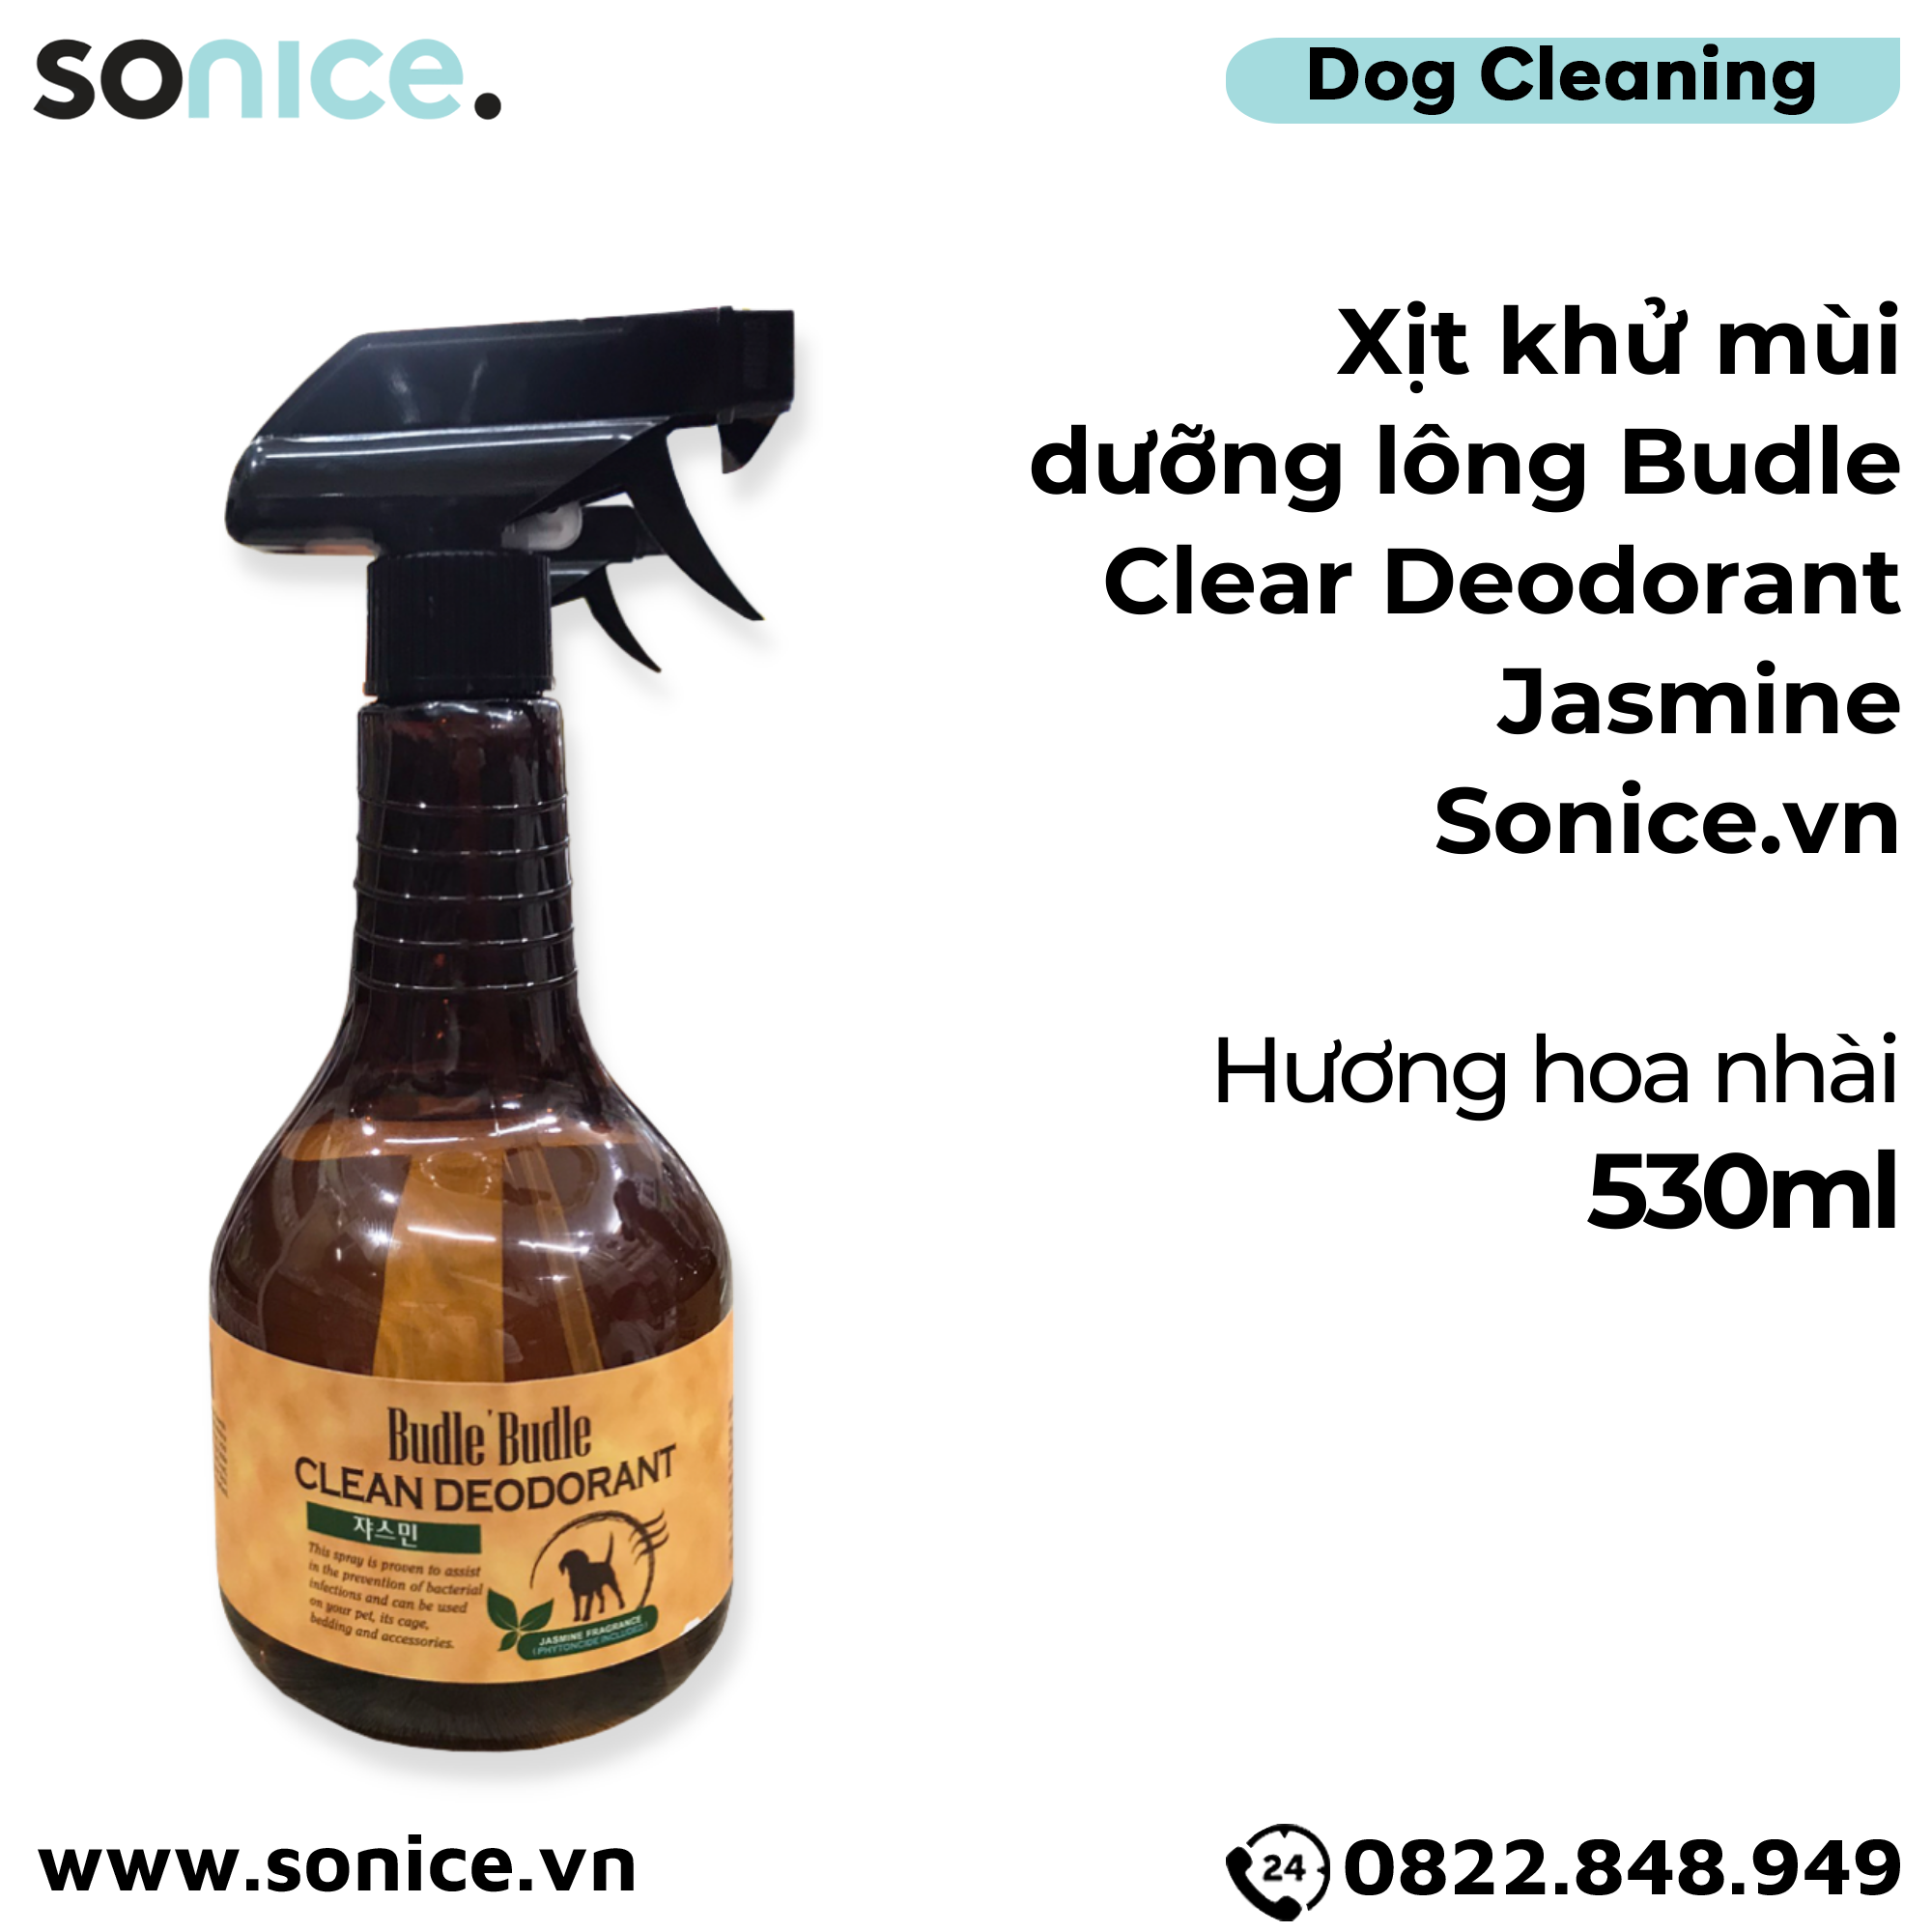  Xịt khử mùi dưỡng lông Budle Clear Deodorant Jasmine 530ml - hoa nhài SONICE. 